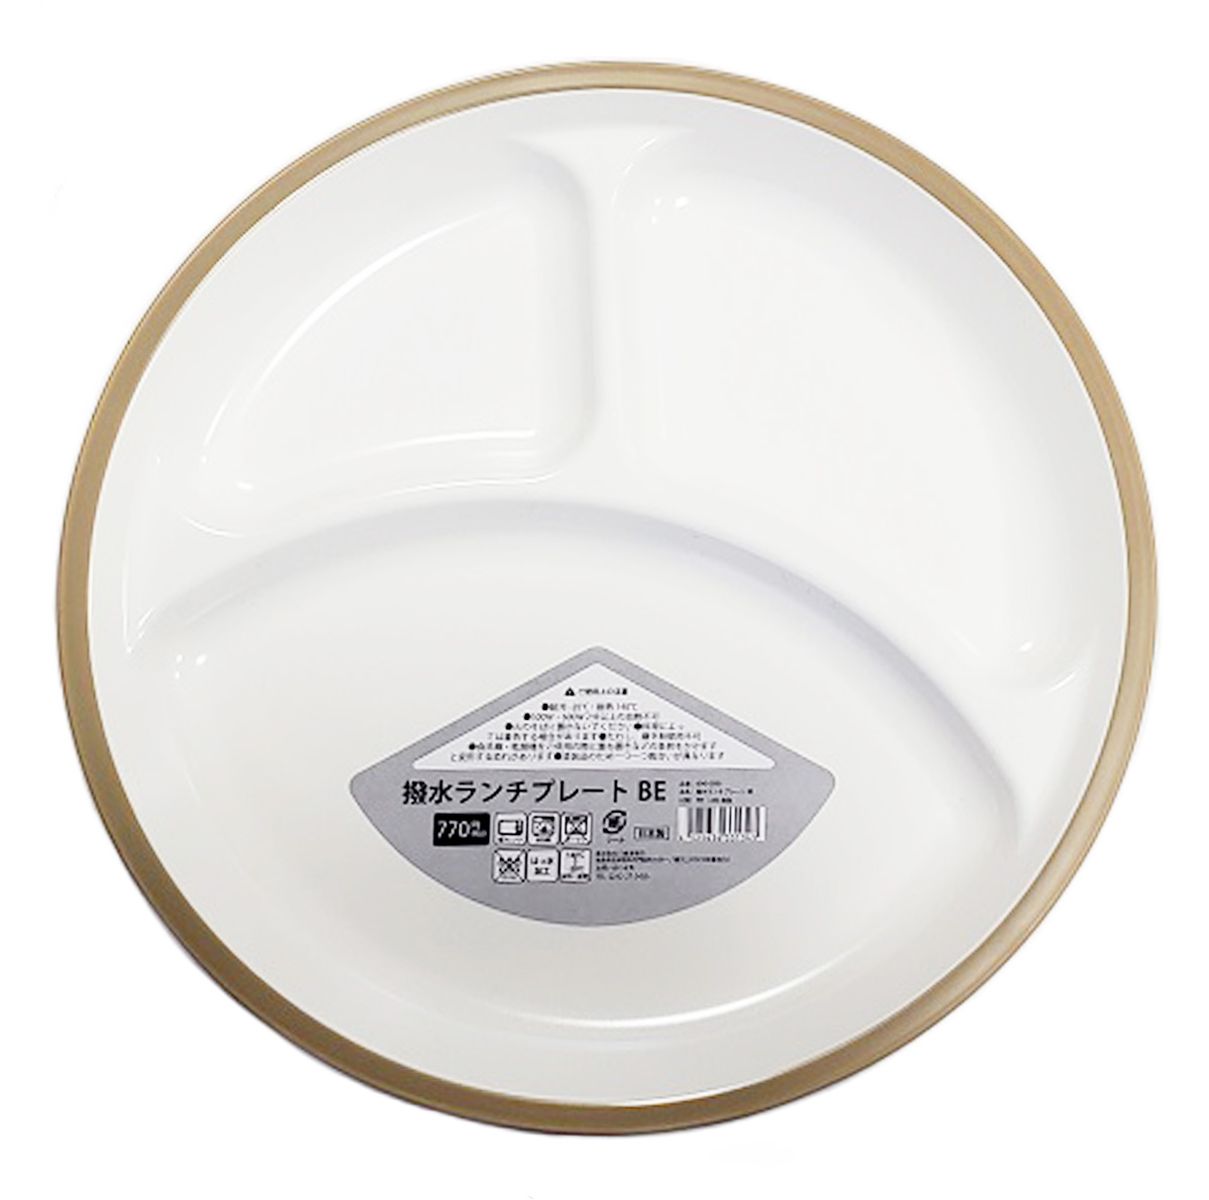 皿 仕切り皿 撥水ランチプレートワンプレートご飯 ベージュ 342026